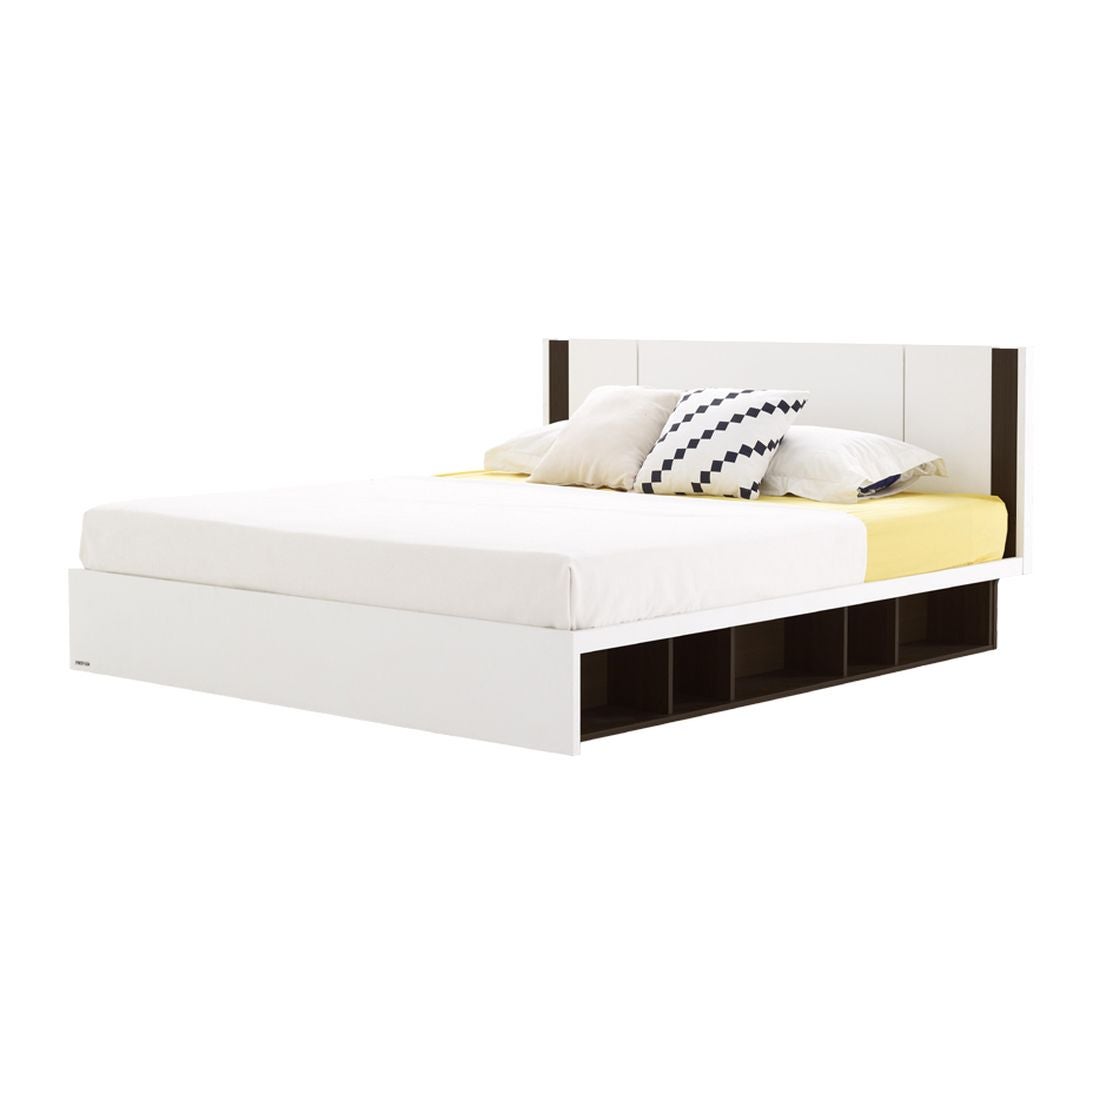 ชุดห้องนอน เตียง รุ่น Patinal สีสีเข้มลายไม้ธรรมชาติ-SB Design Square